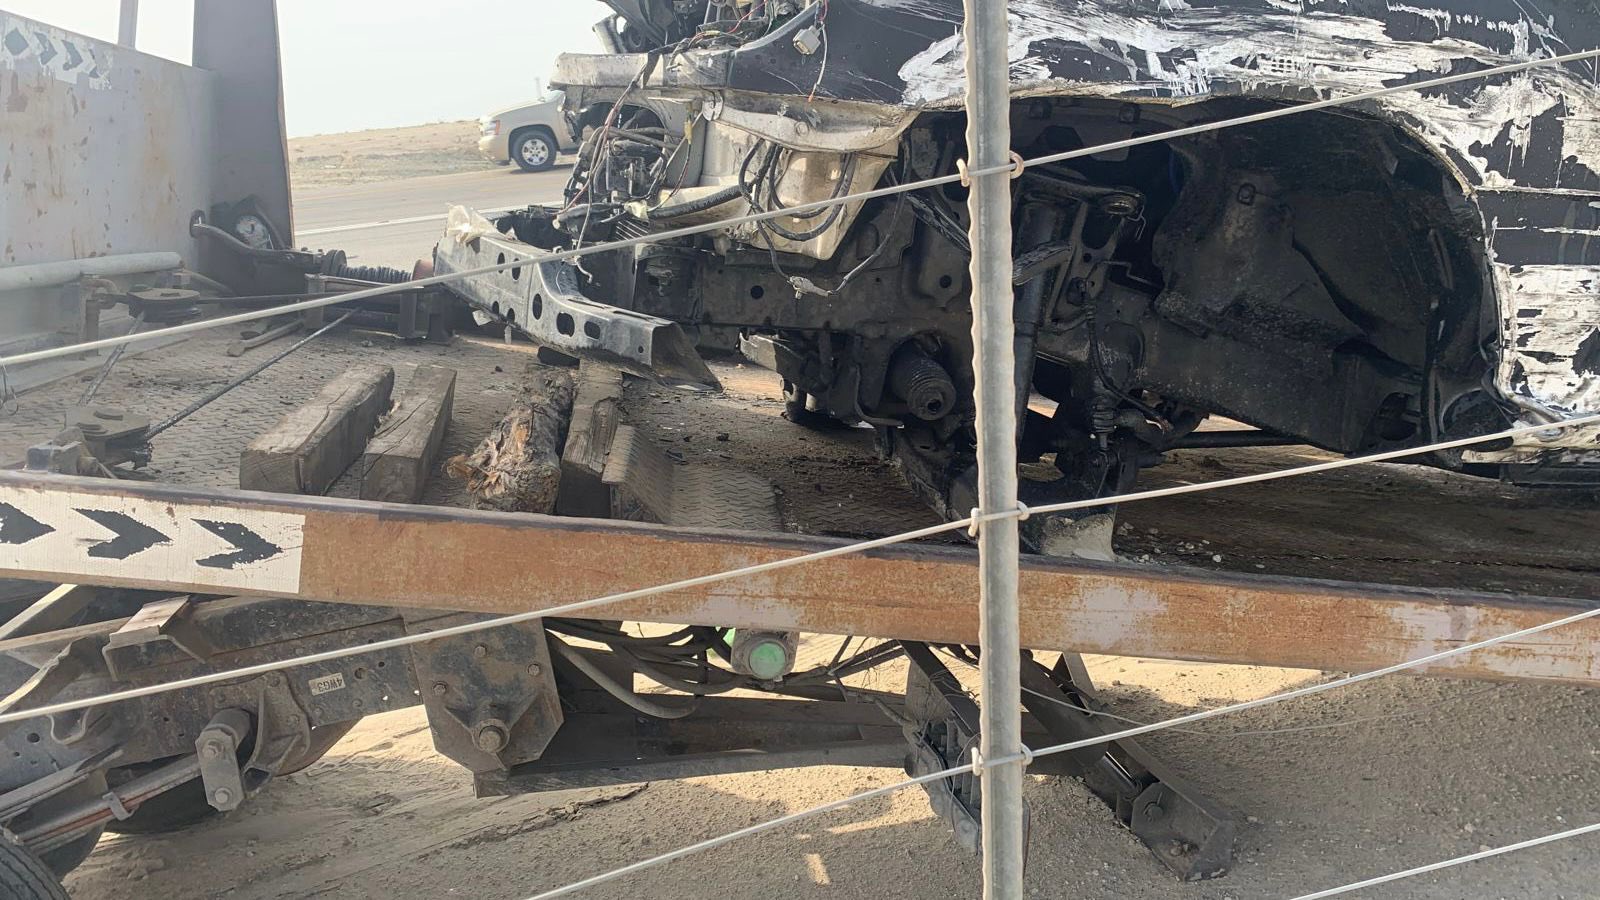 شاهد بالصور..مصرع 4 إماراتيين بحادث مروري مروع  في السعودية